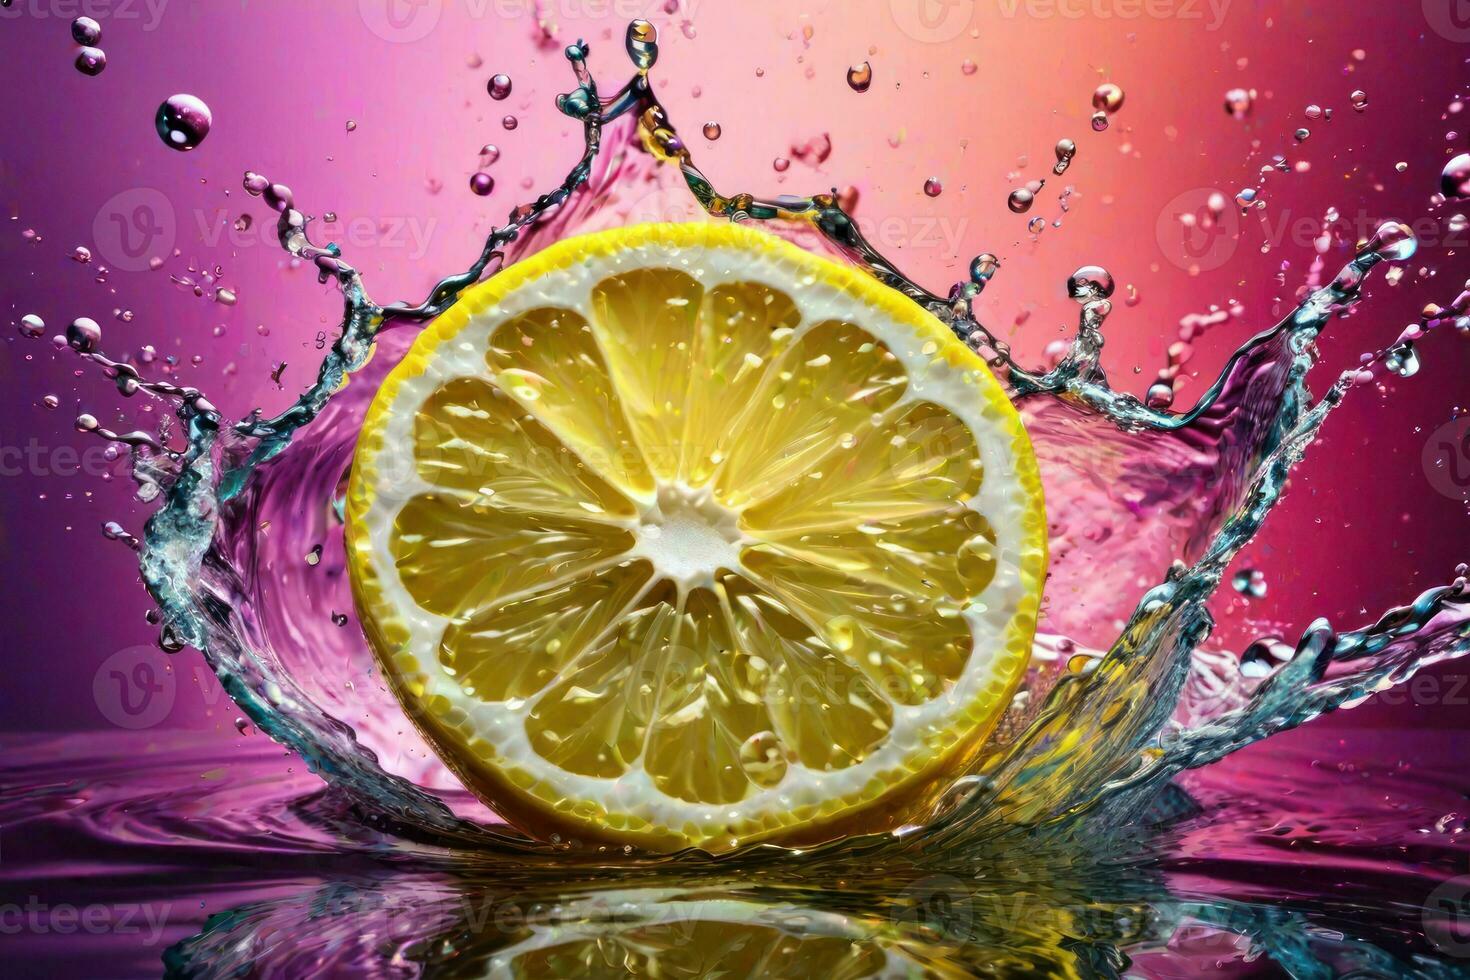 limones y sus rebanadas que cae dentro agua y salpicando generativo ai foto